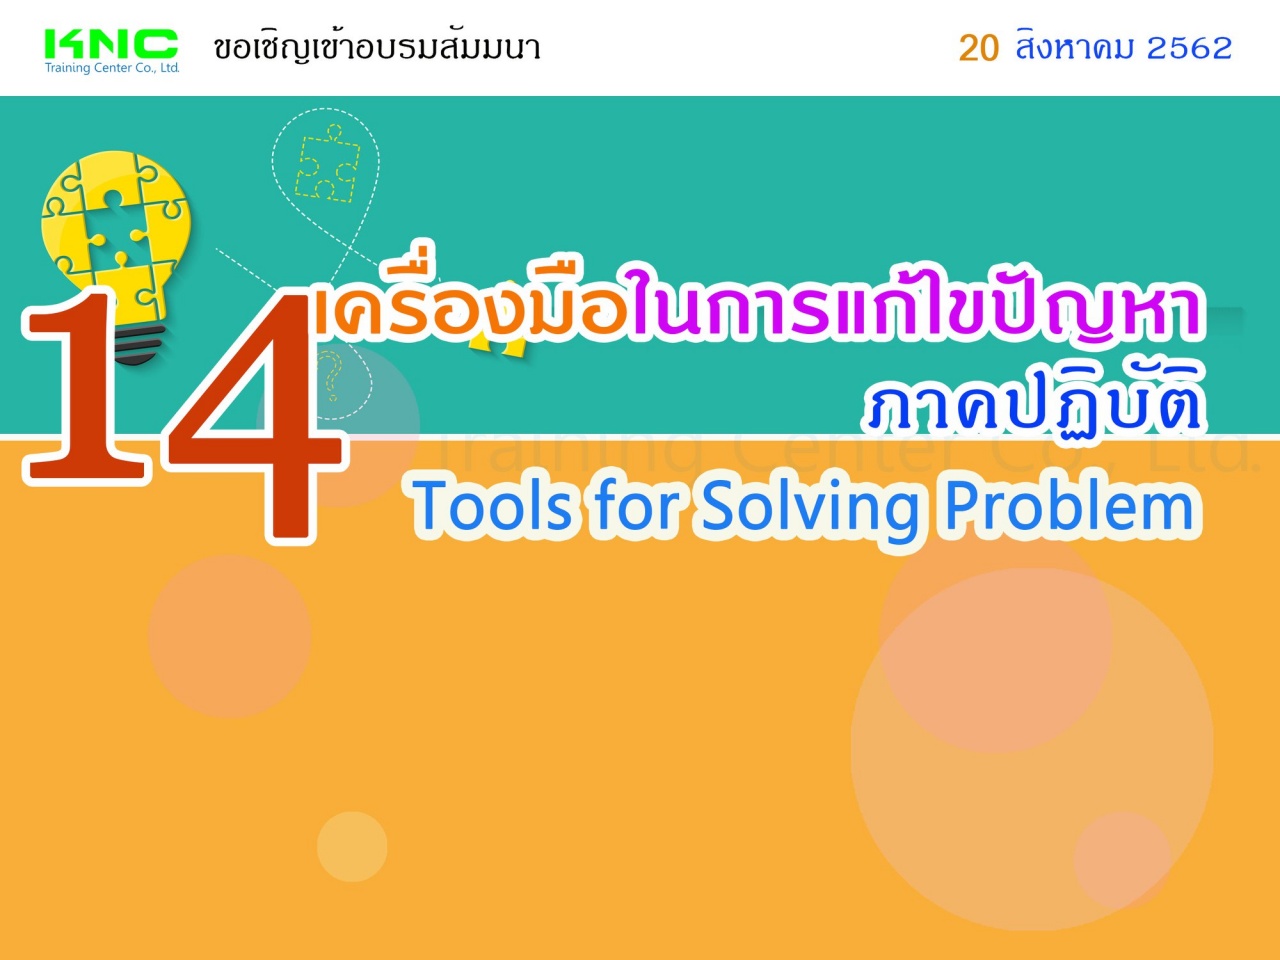 14 เครื่องมือในการแก้ไขปัญหา (ภาคปฏิบัติ) (14 Tools for Problem Solving)